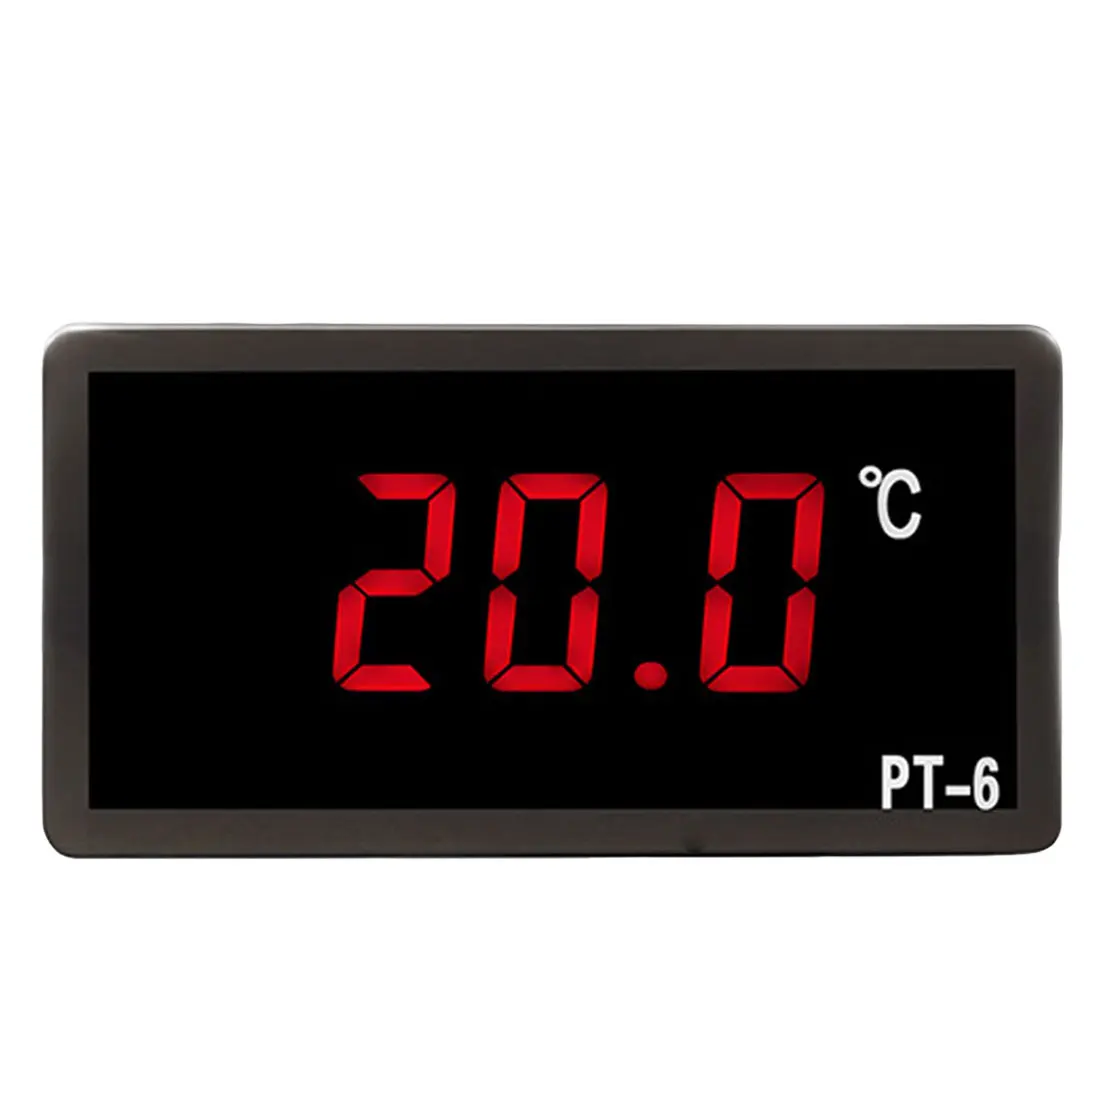 50~ 110C цифровой автомобильный термометр, измеритель температуры автомобиля, монитор 12V 24V 110V Автомобильный термометр с датчиком NTC PT-6